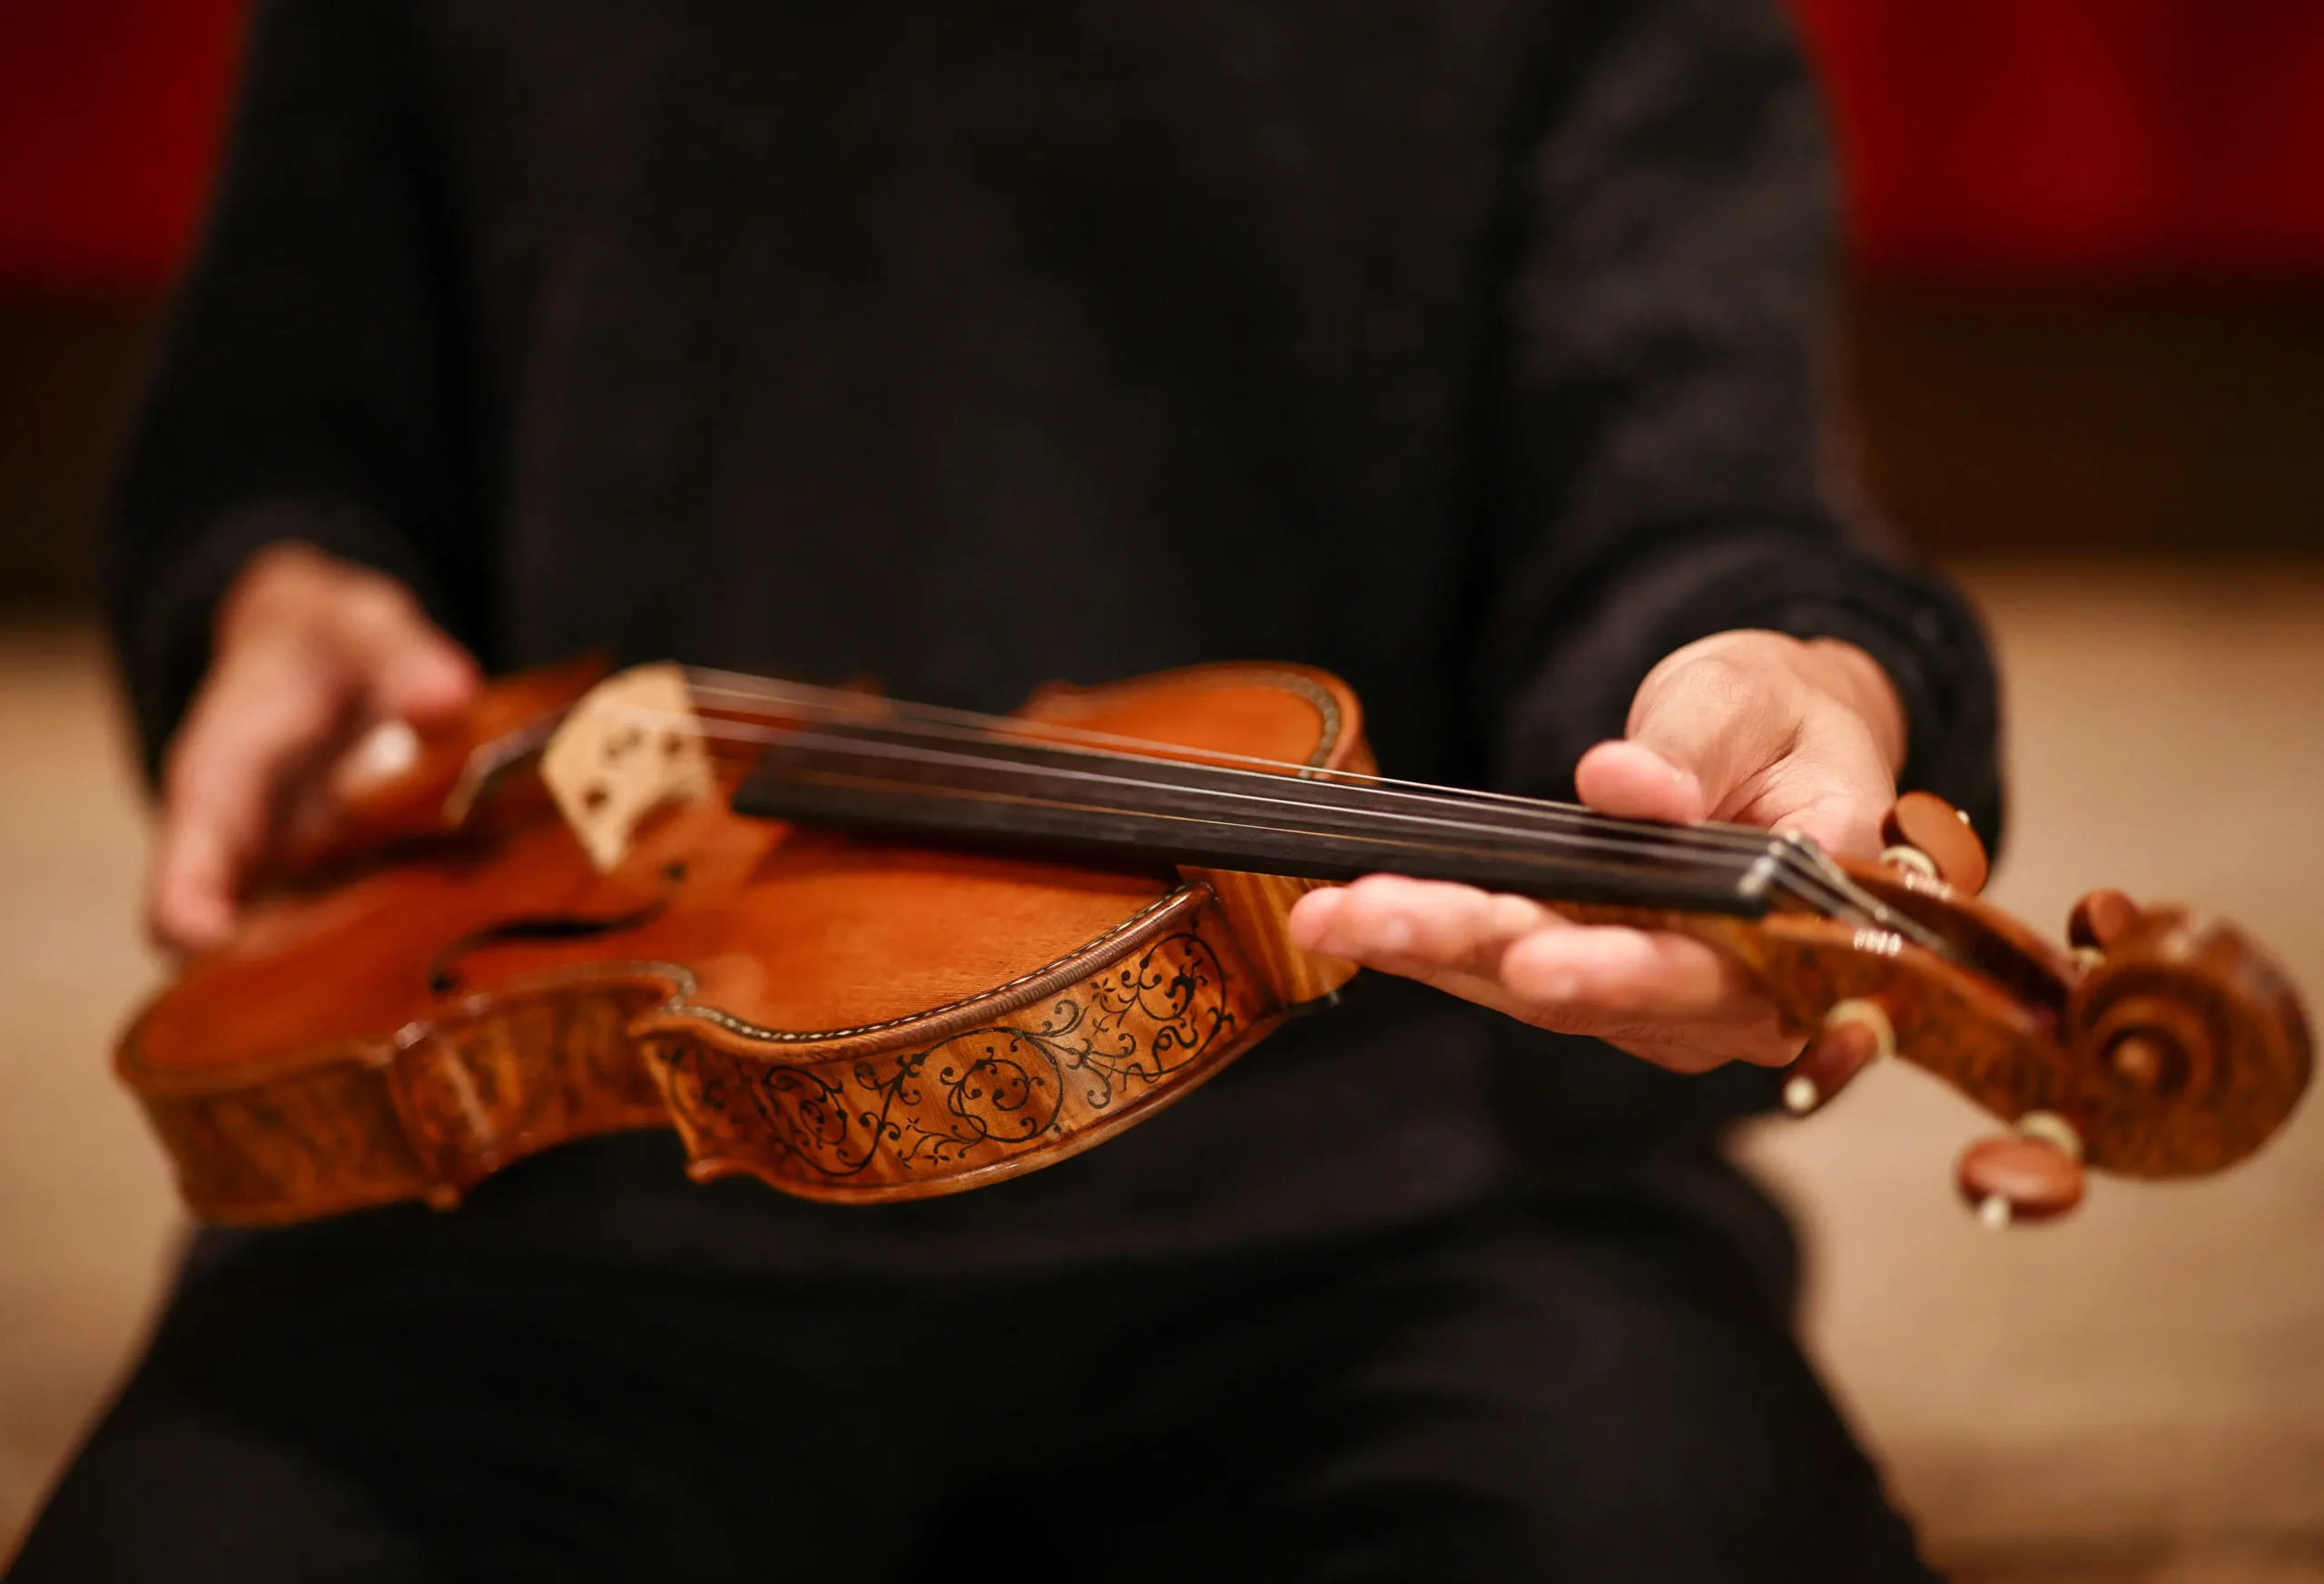 buy a stradicarius violin - How do violinists afford Stradivarius